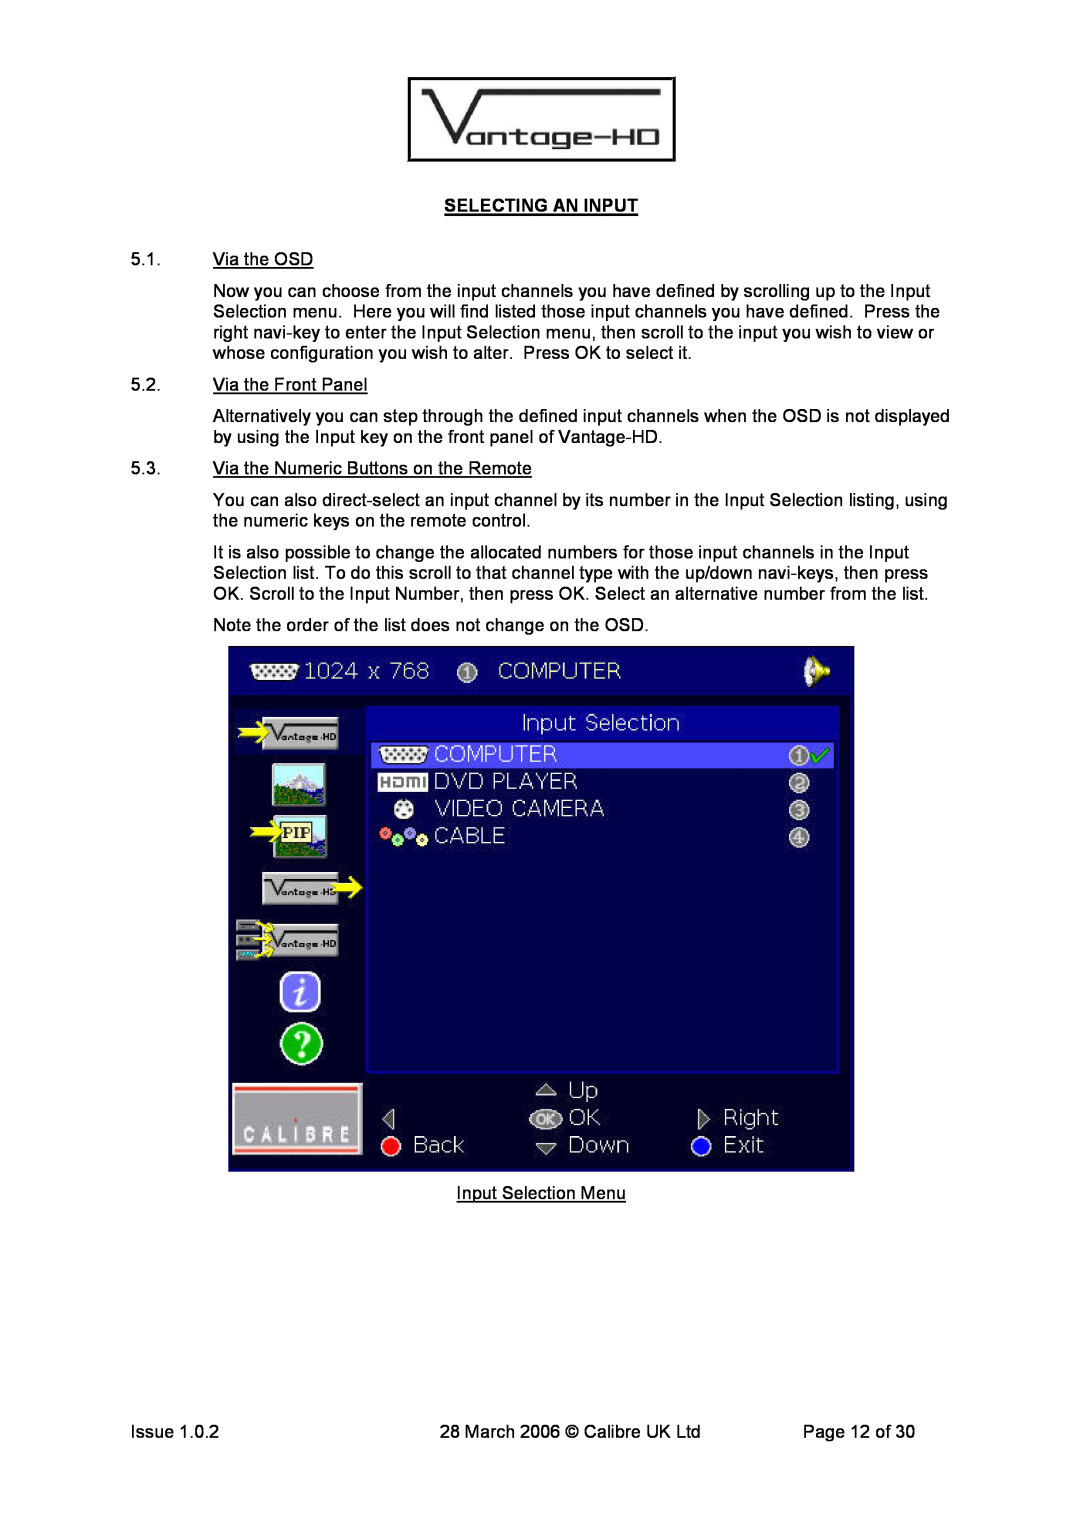 Calibre UK VANTAGE-HD manual Selecting An Input 